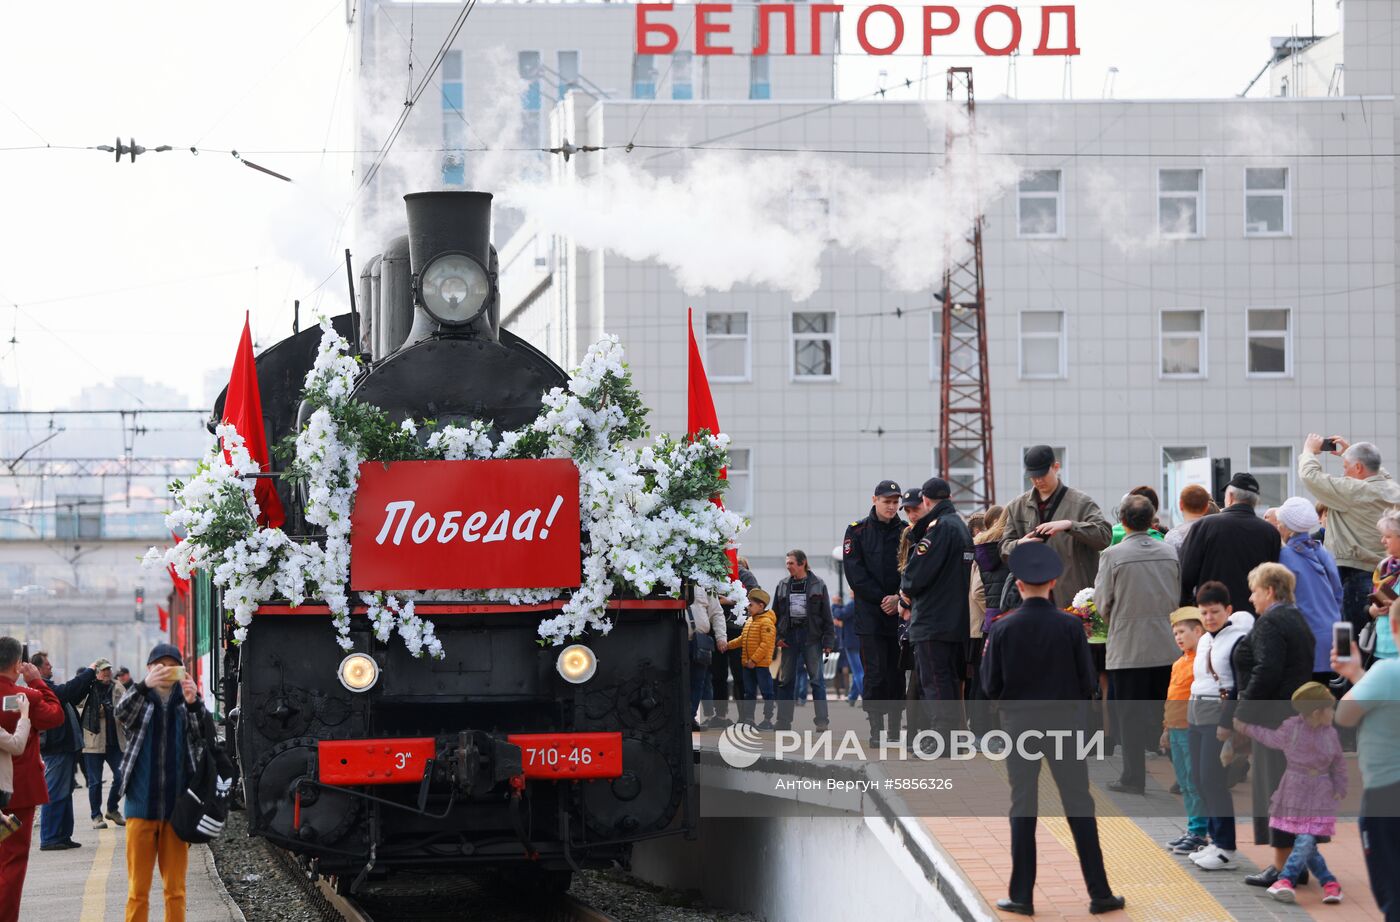 Прибытие "Поезда Победы" в Белгород